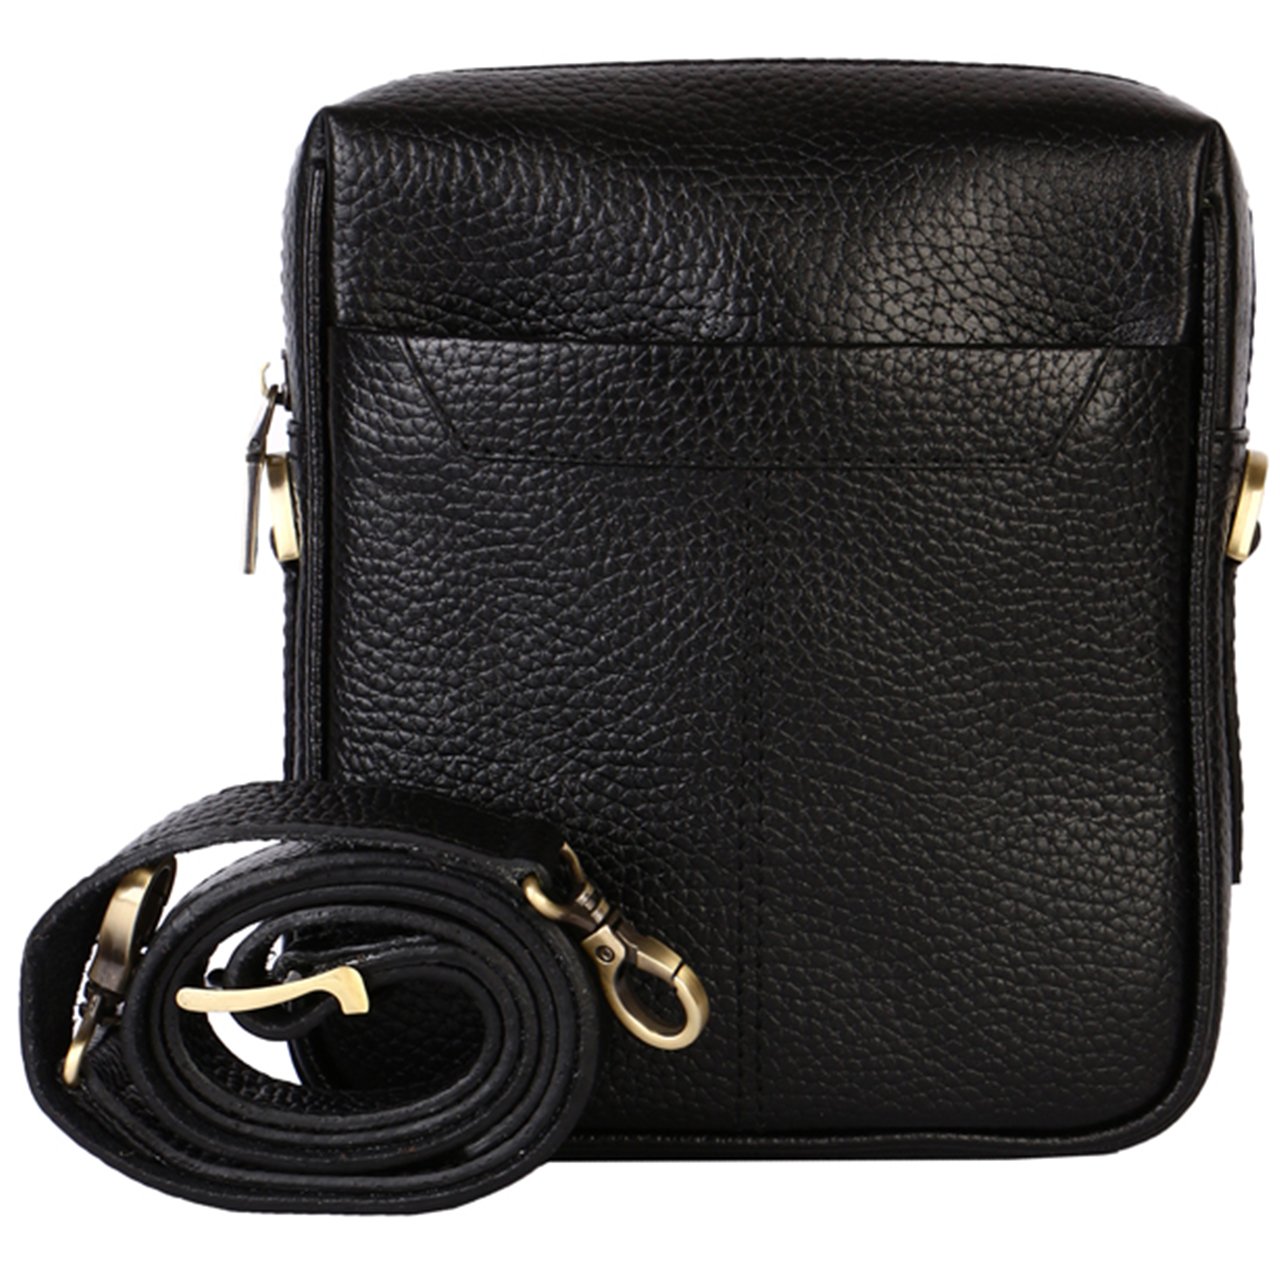 کیف دوشی رویال چرم کدW62-Black سایز M